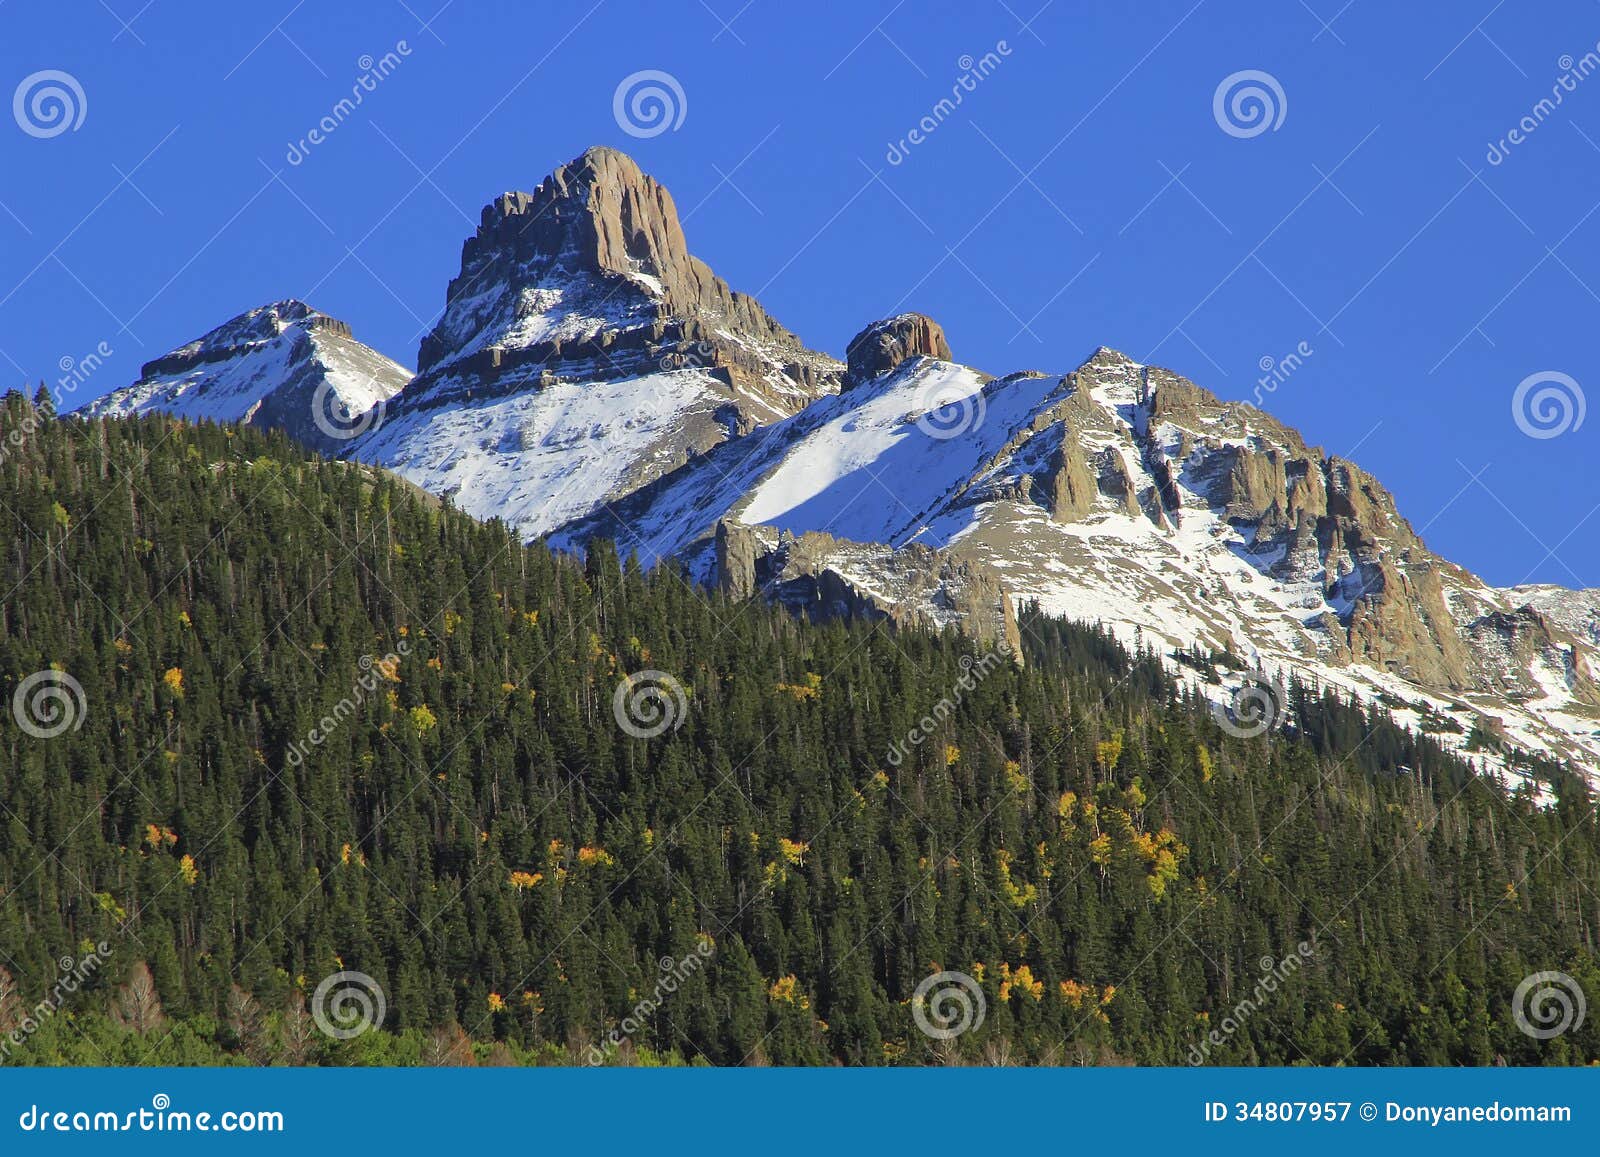 white house mountain, mount sneffels range, colorado